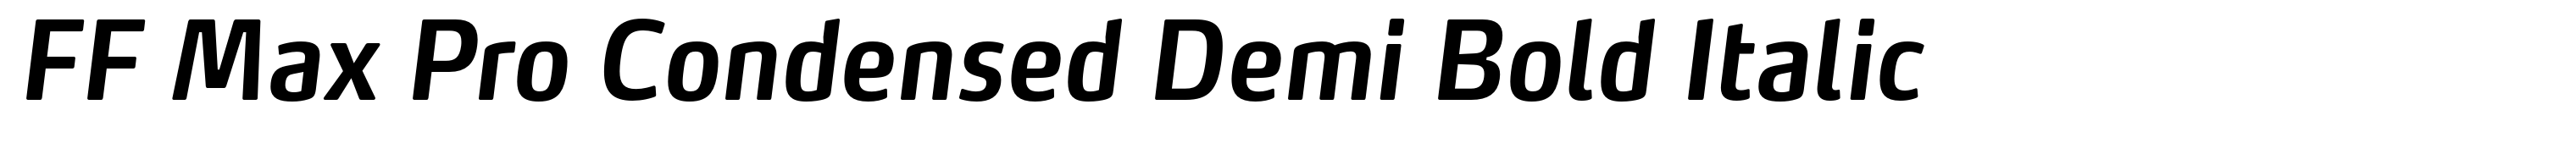 FF Max Pro Condensed Demi Bold Italic